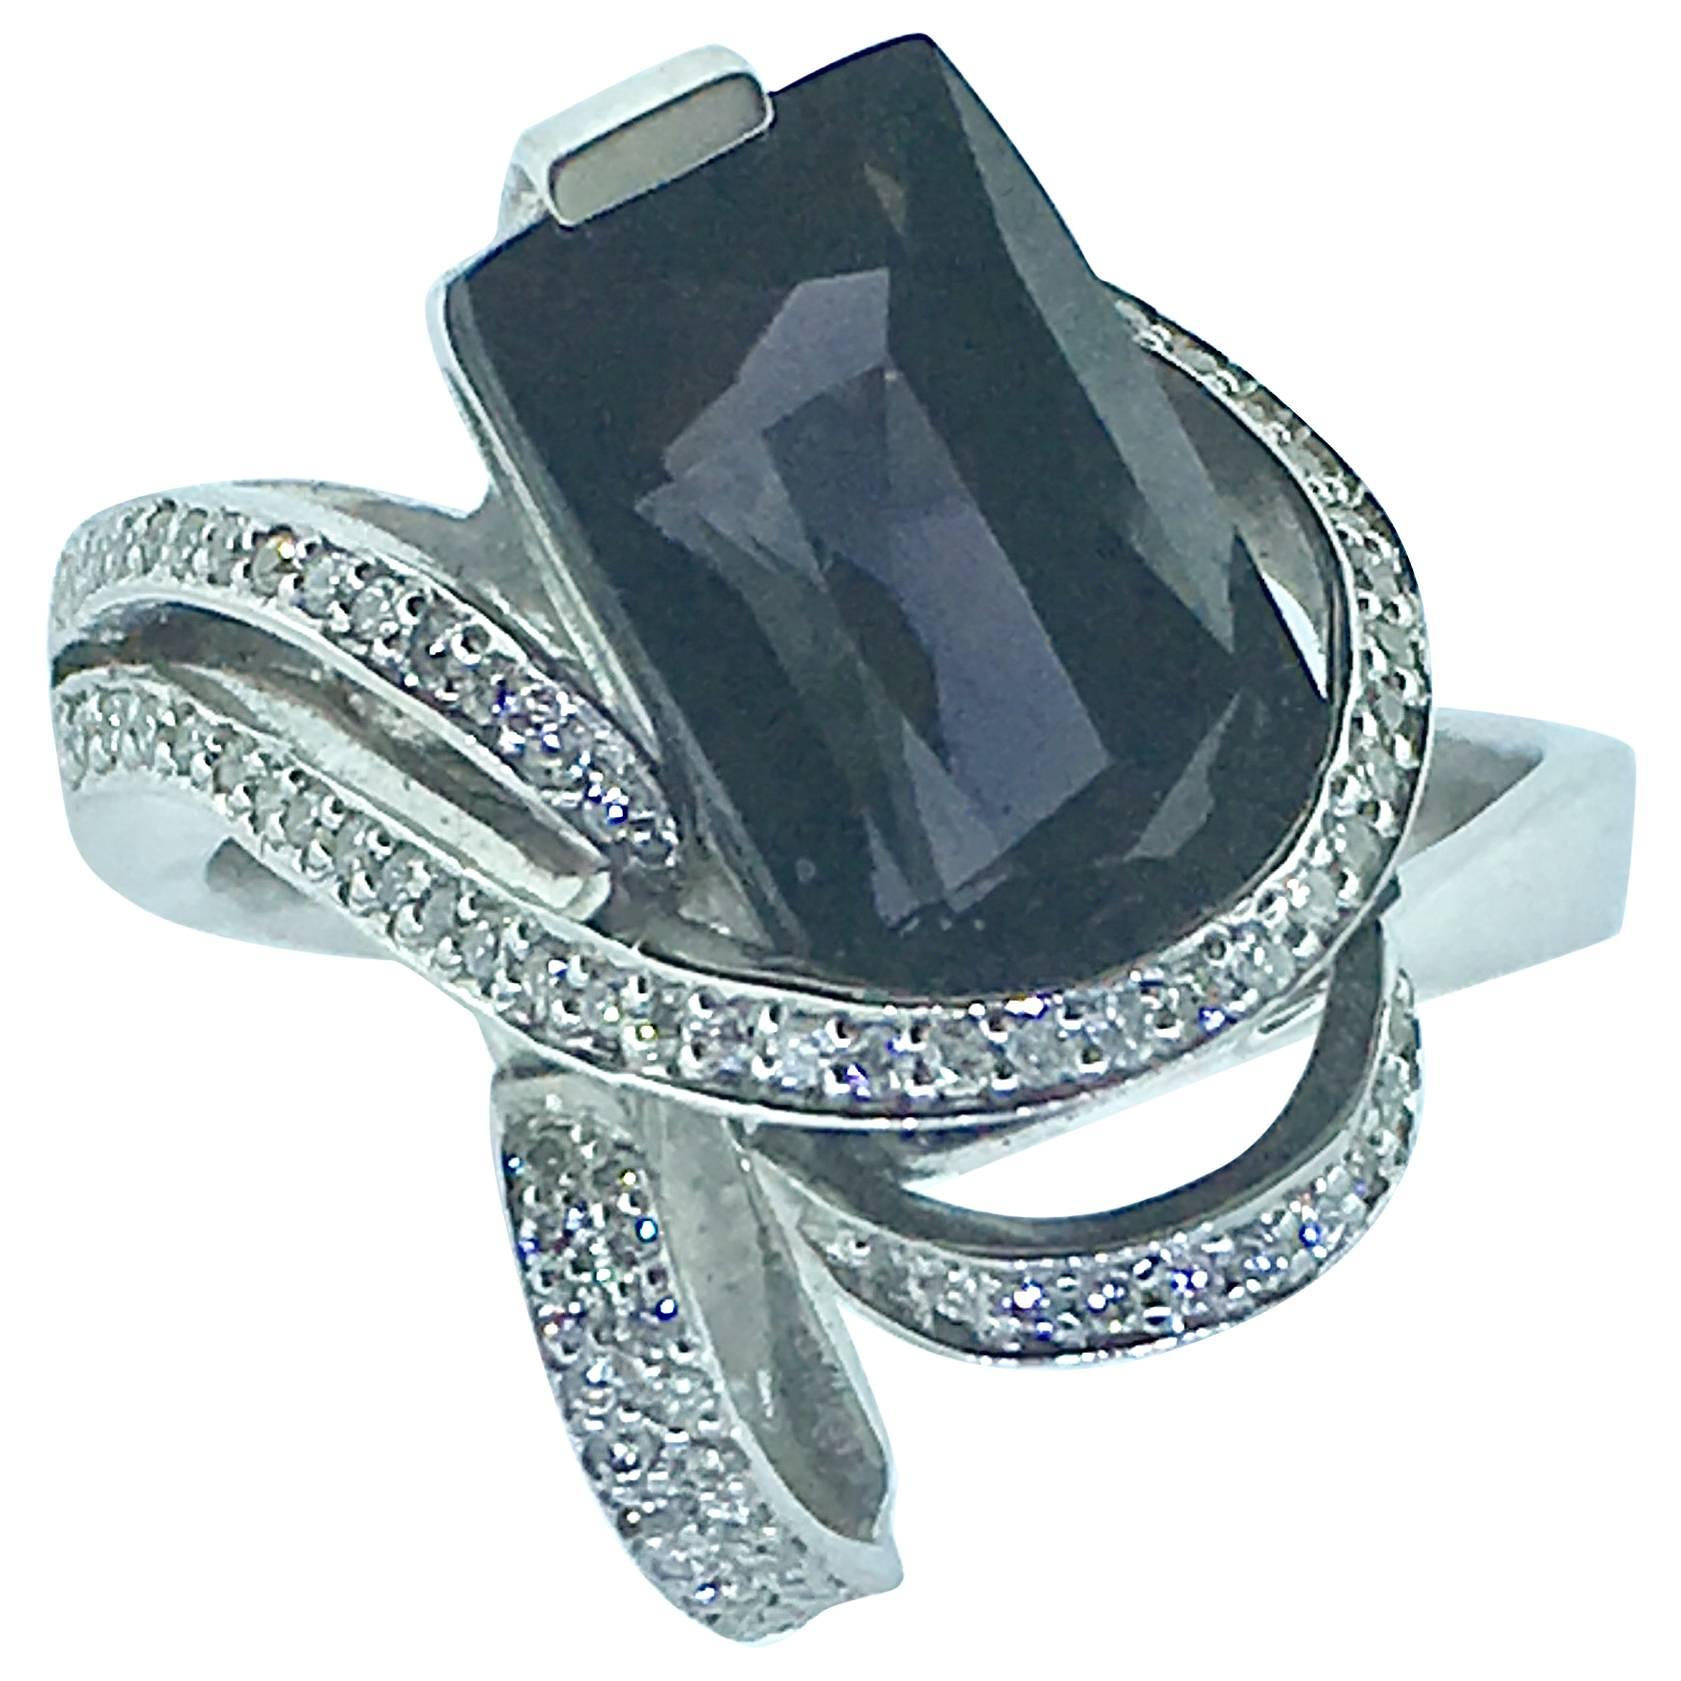 L. Van Giel  Diamonds and Saphire Art Nouveau  Ring